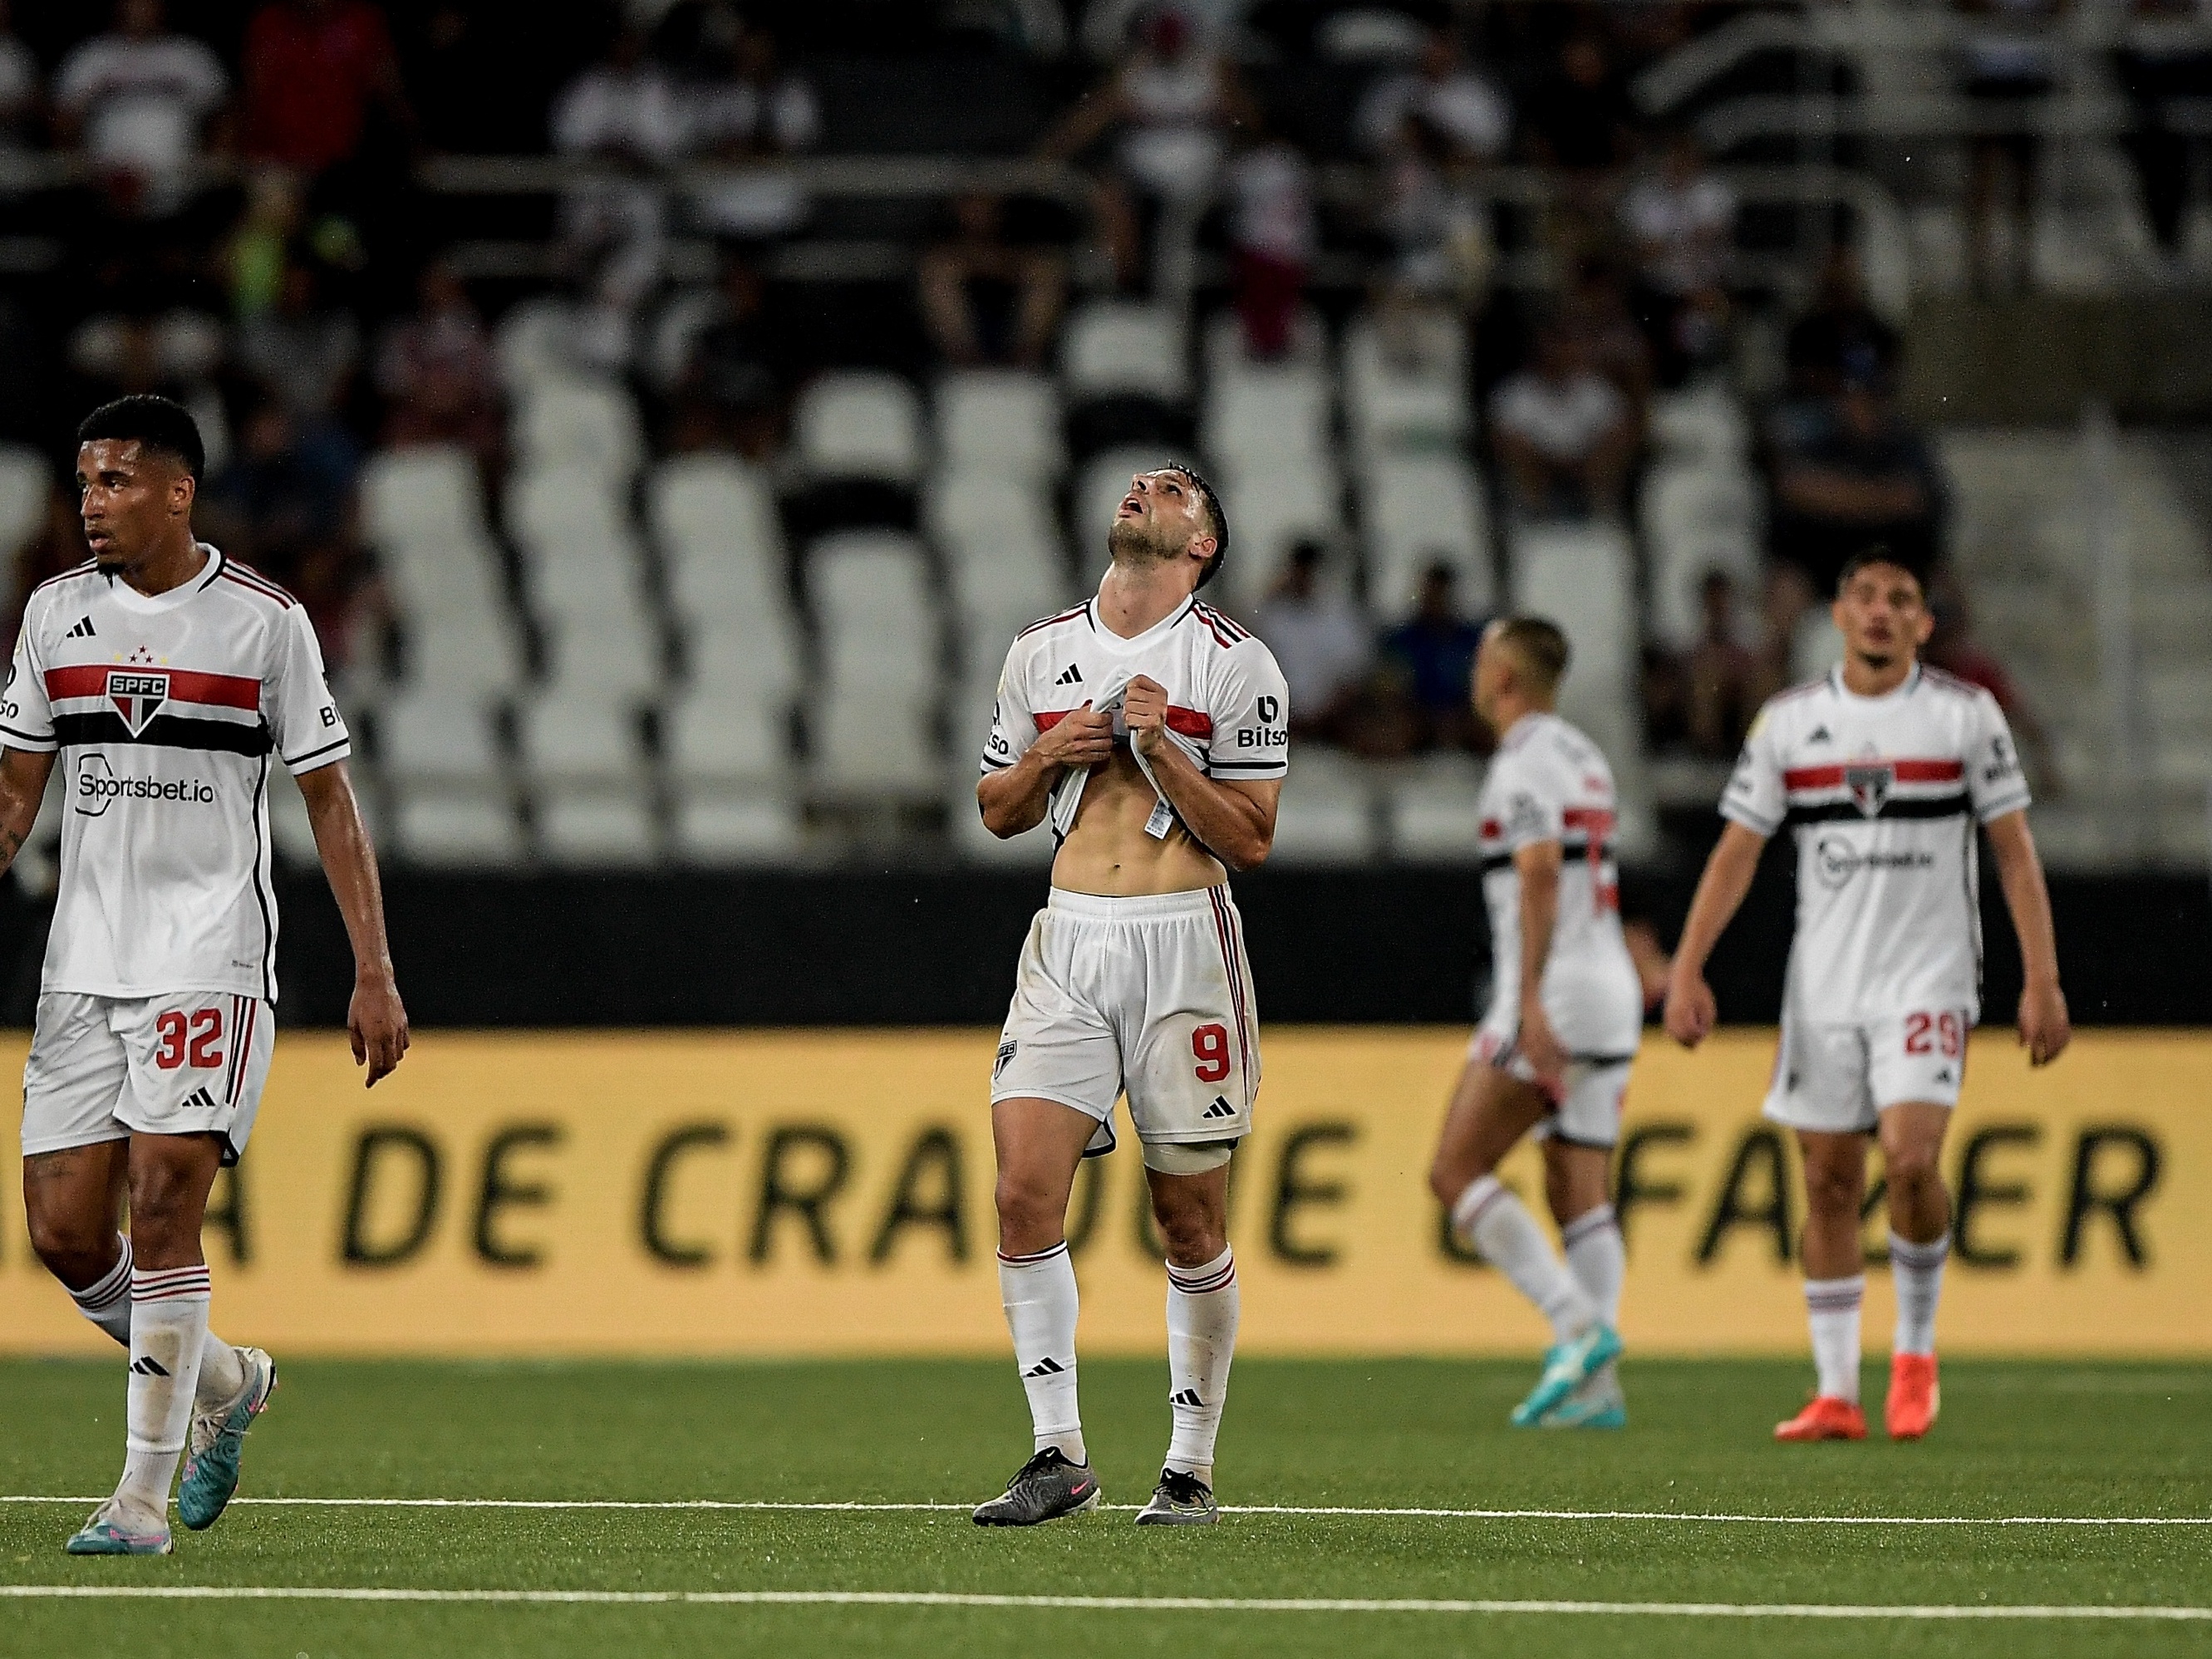 Fora de casa, São Paulo é derrotado na Final do Campeonato